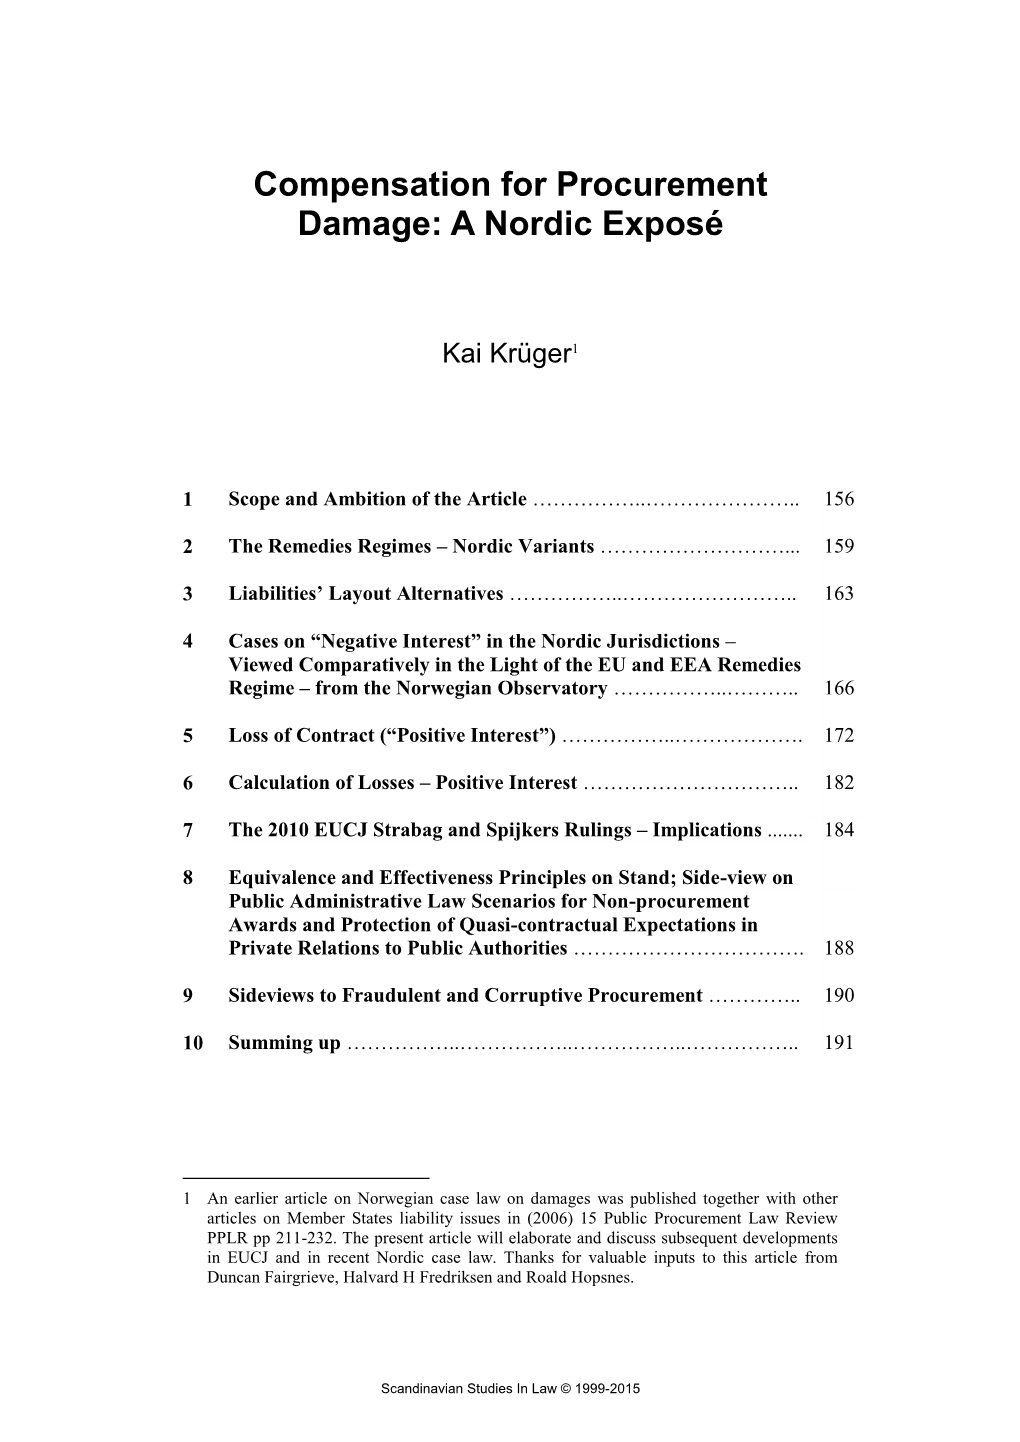 Compensation for Procurement Damage: a Nordic Exposé